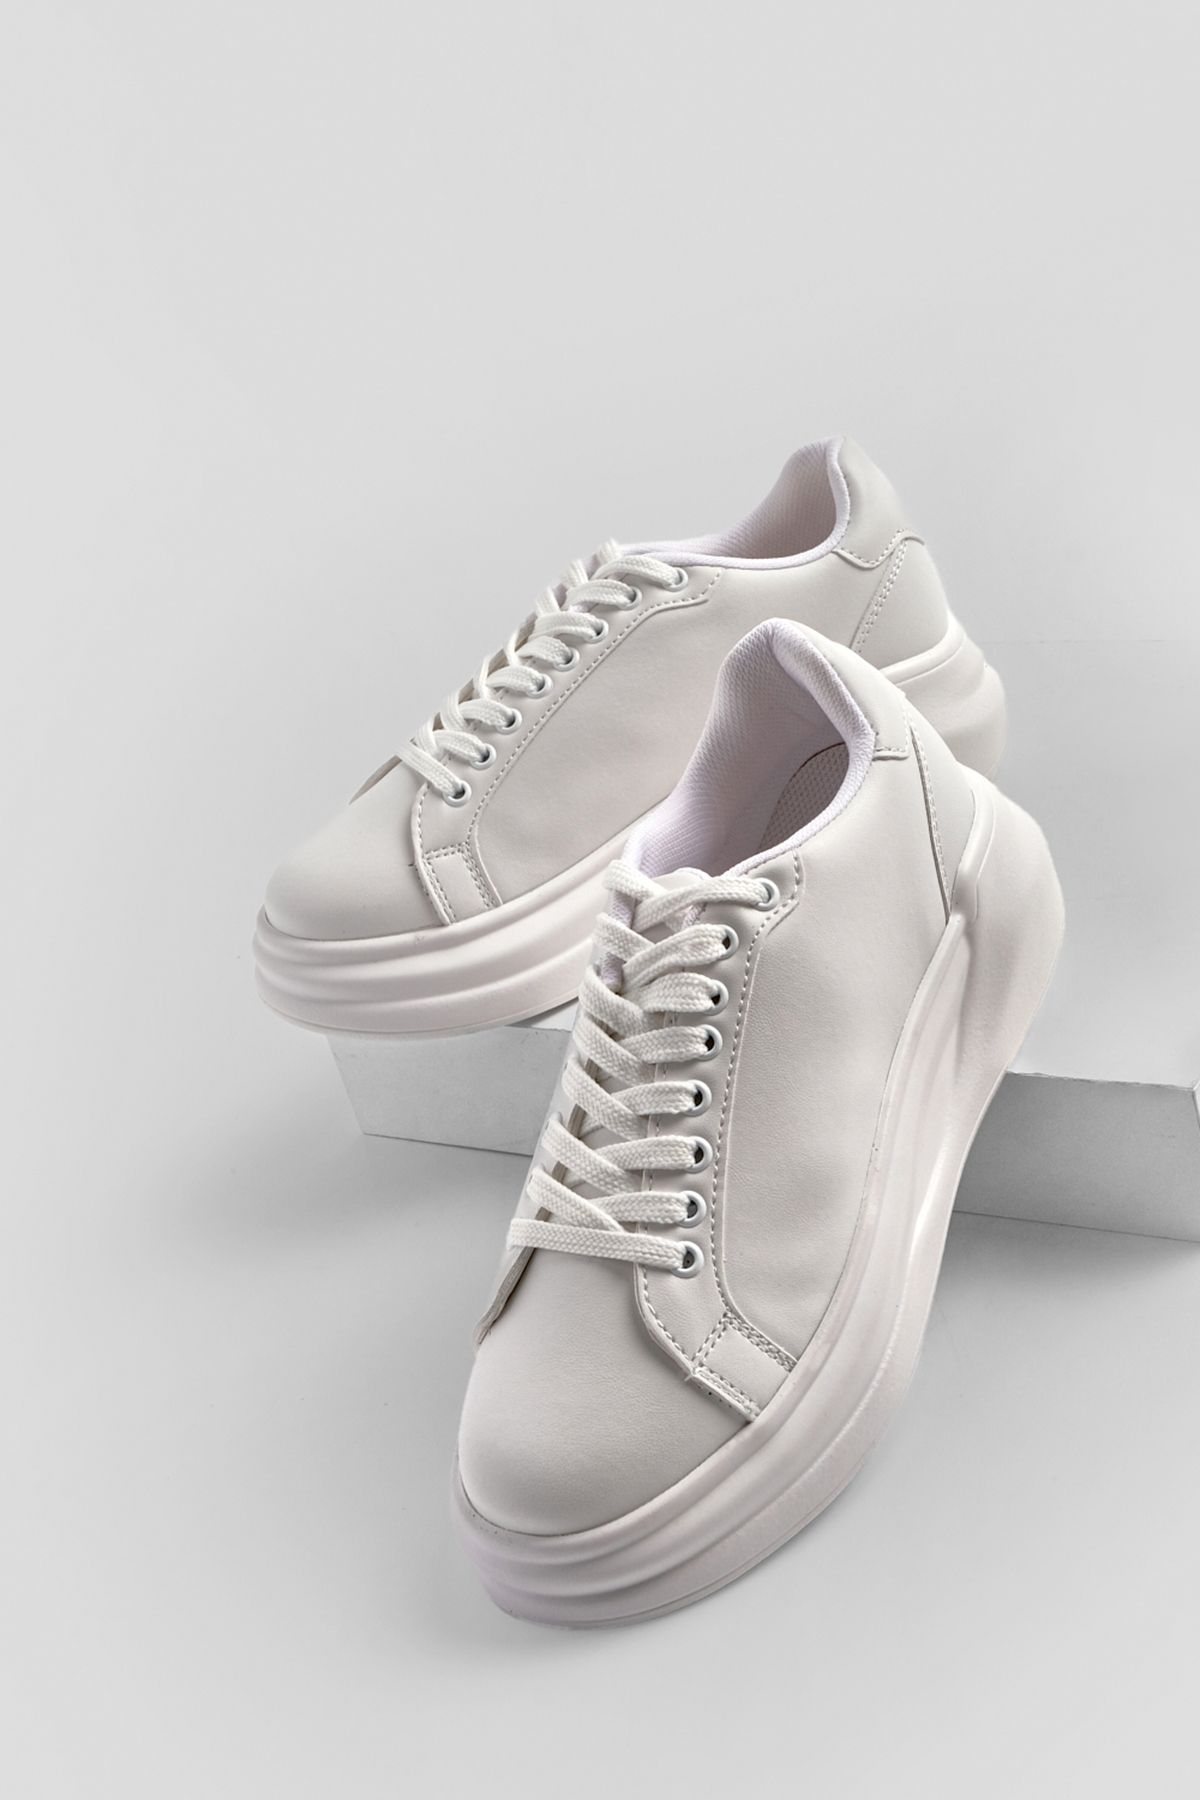 Marjin Kadın Sneaker Yüksek Taban Bağcıklı Spor Ayakkabı Bekor beyaz